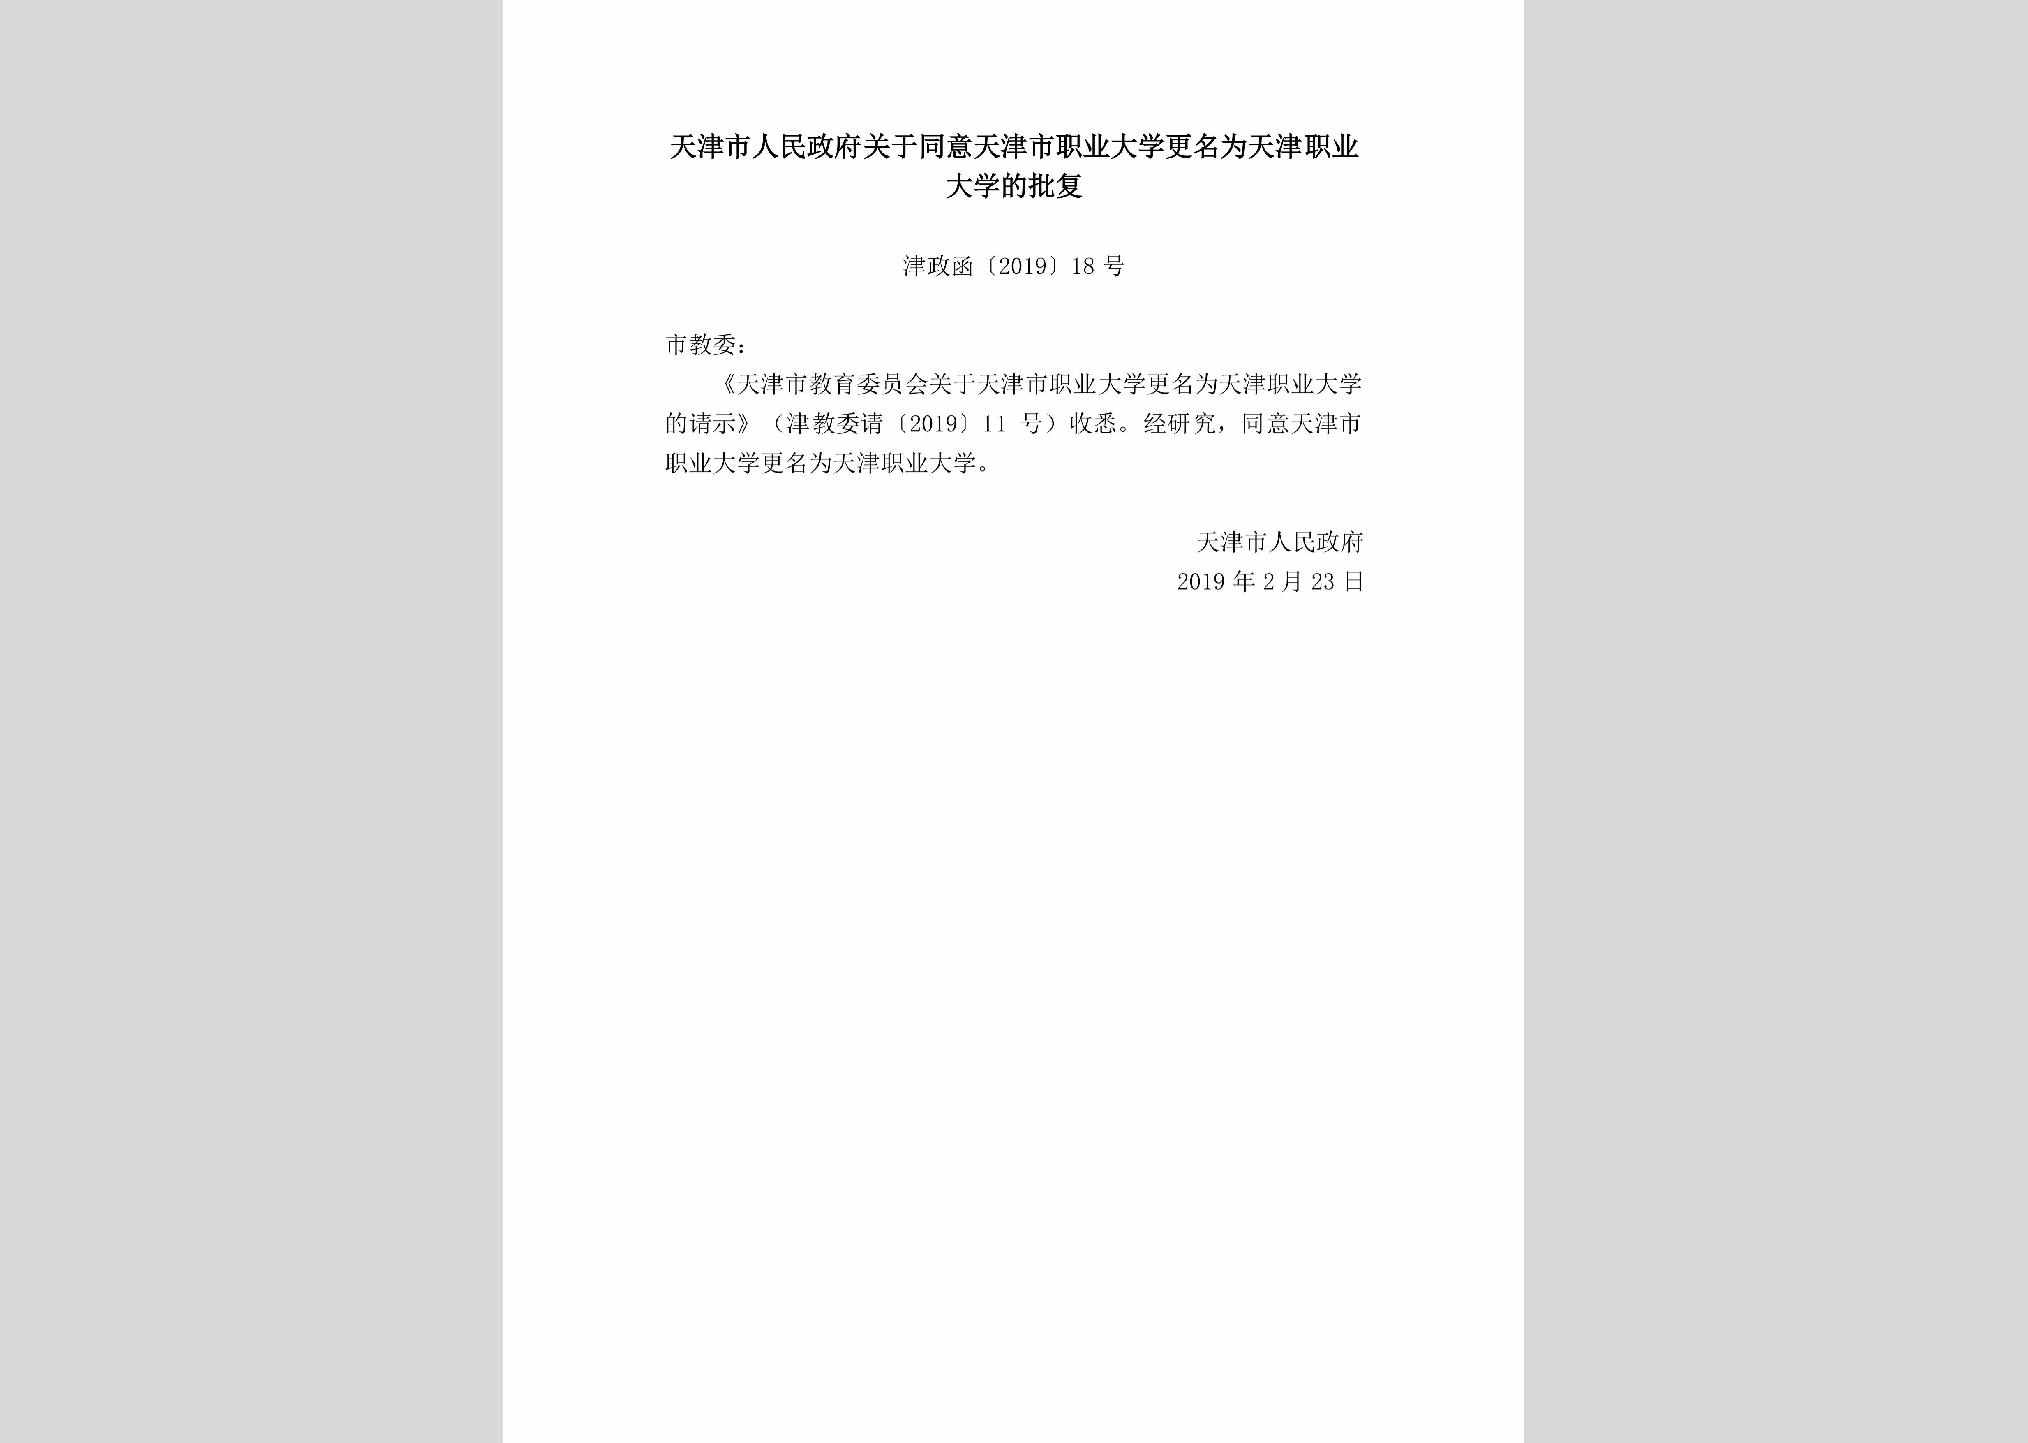 津政函[2019]18号：天津市人民政府关于同意天津市职业大学更名为天津职业大学的批复